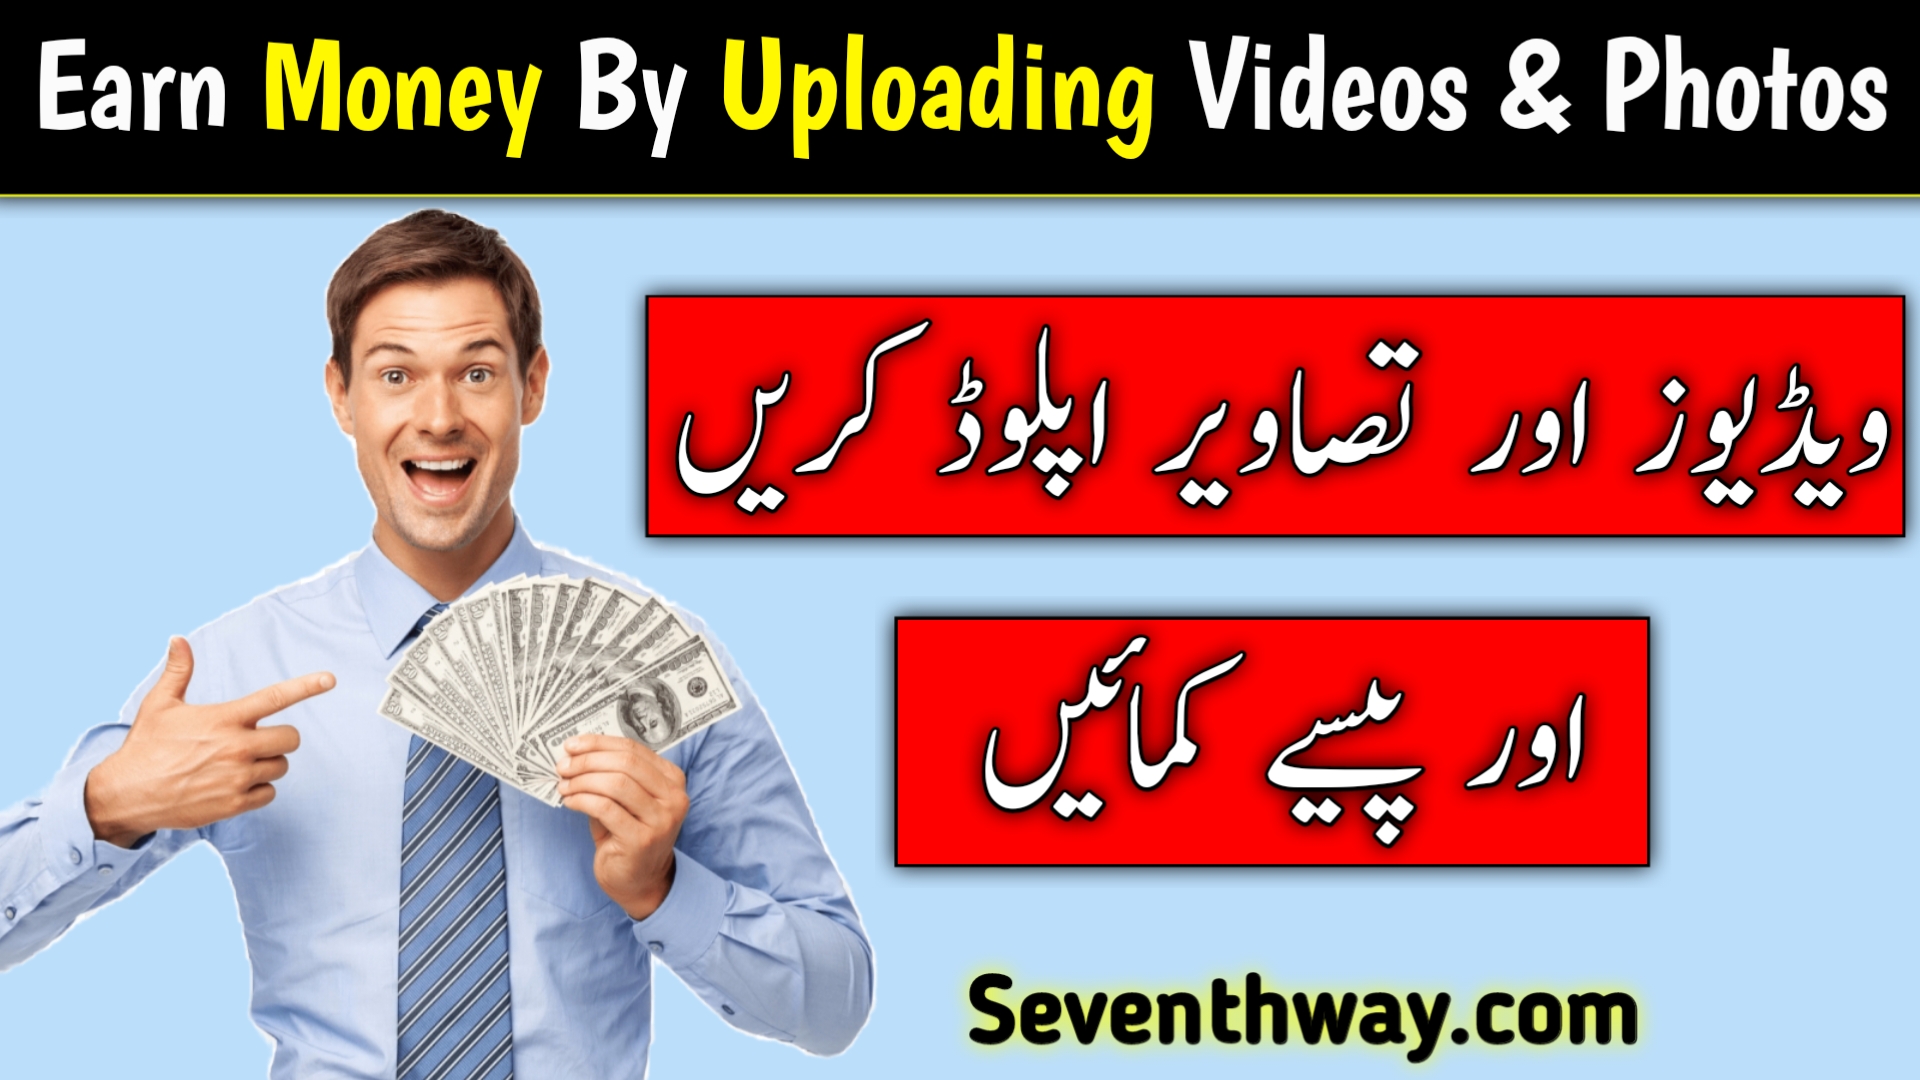 Earn Money by uploading videos